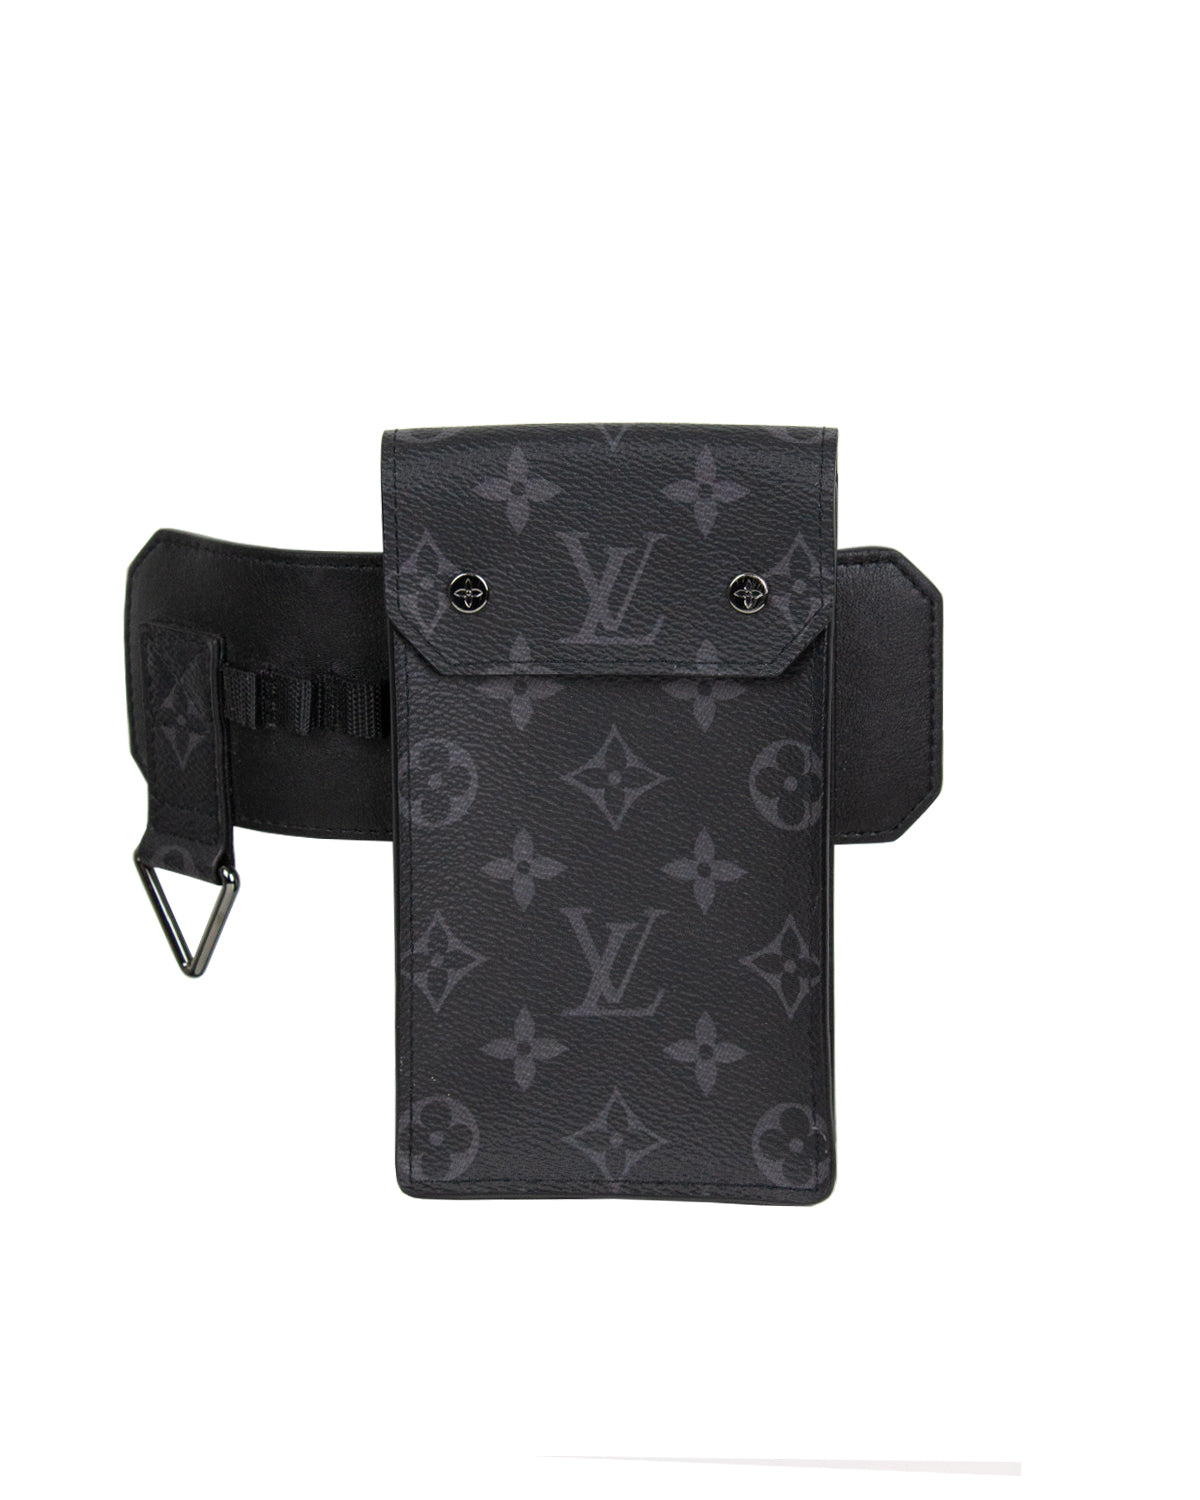 Louis Vuitton LV Skyline 35mm Belt Black Leather. Size 90 cm